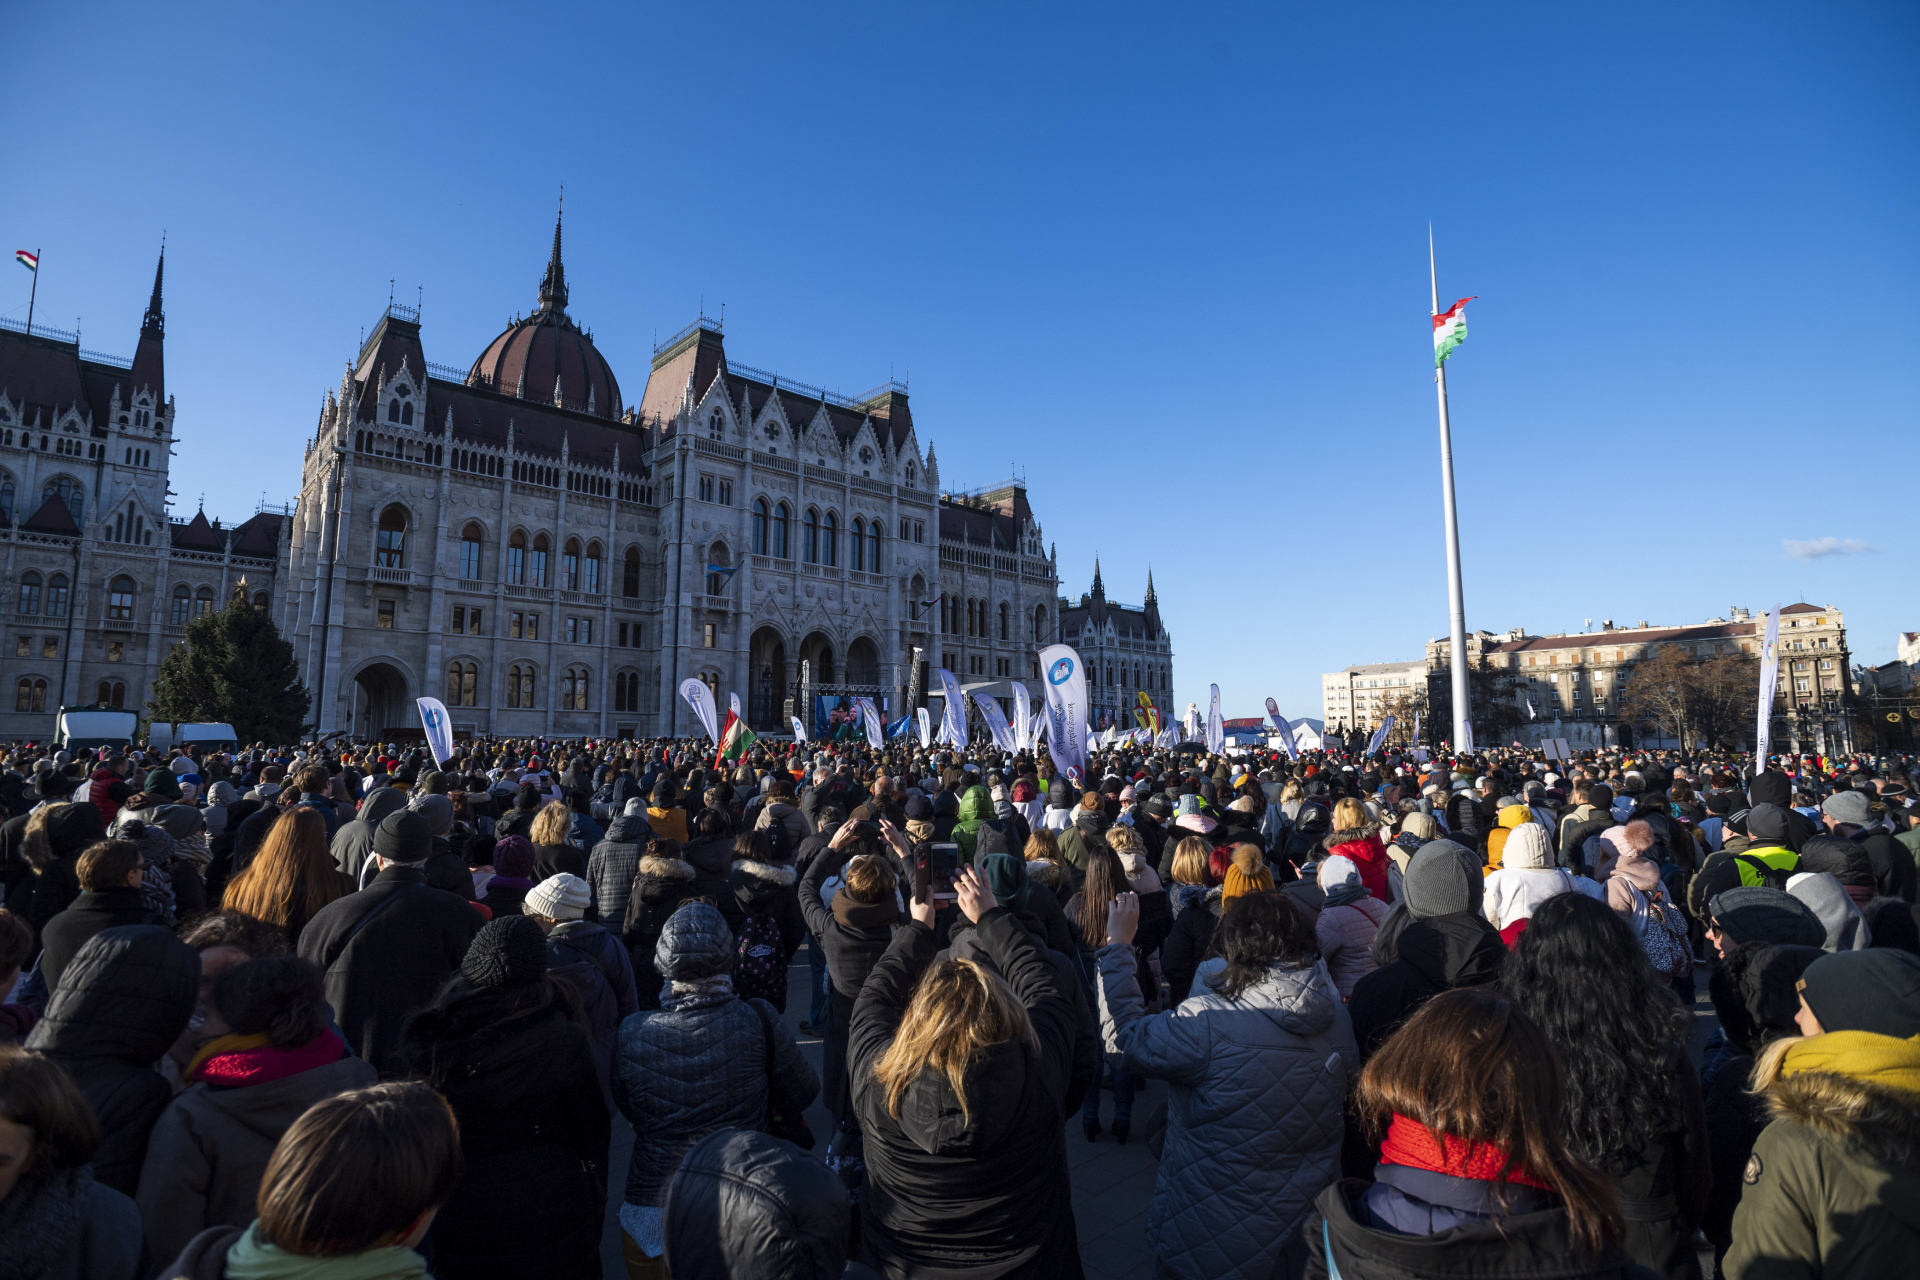 Pedagógusok Szakszervezete (PSZ), pedagógusdemonstráció, tüntetés, tiltakozás, Kossuth tér